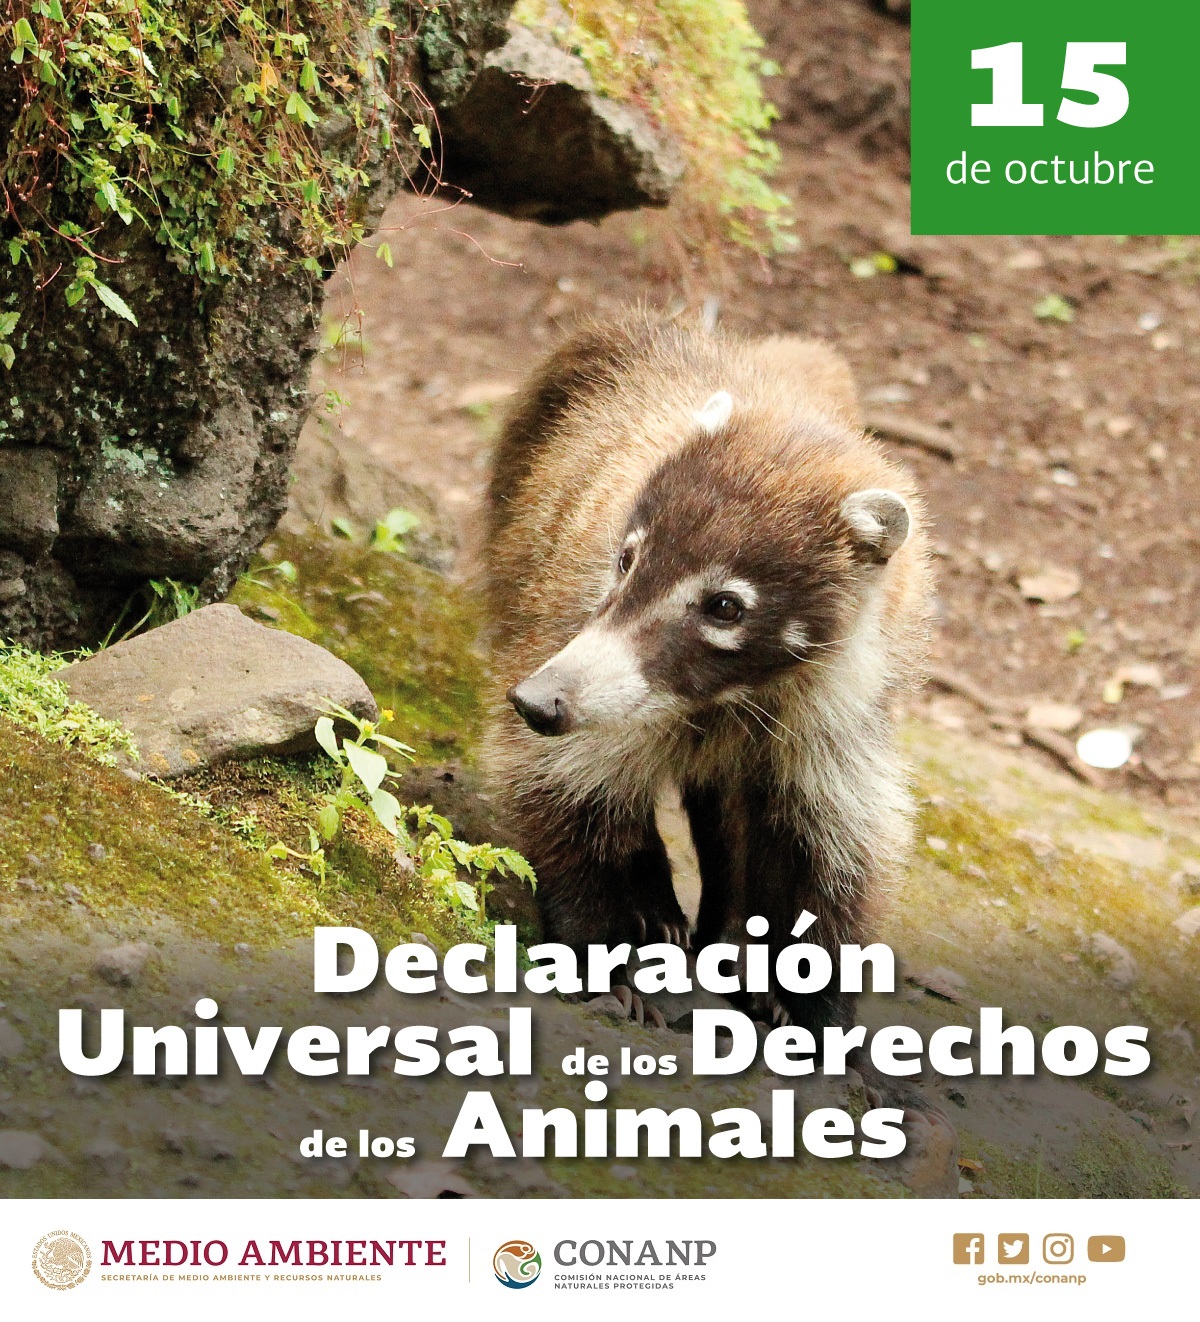 /cms/uploads/image/file/534166/Declaraci_n_Universal_de_los_Derechos_de_los_Animales_2019.jpg